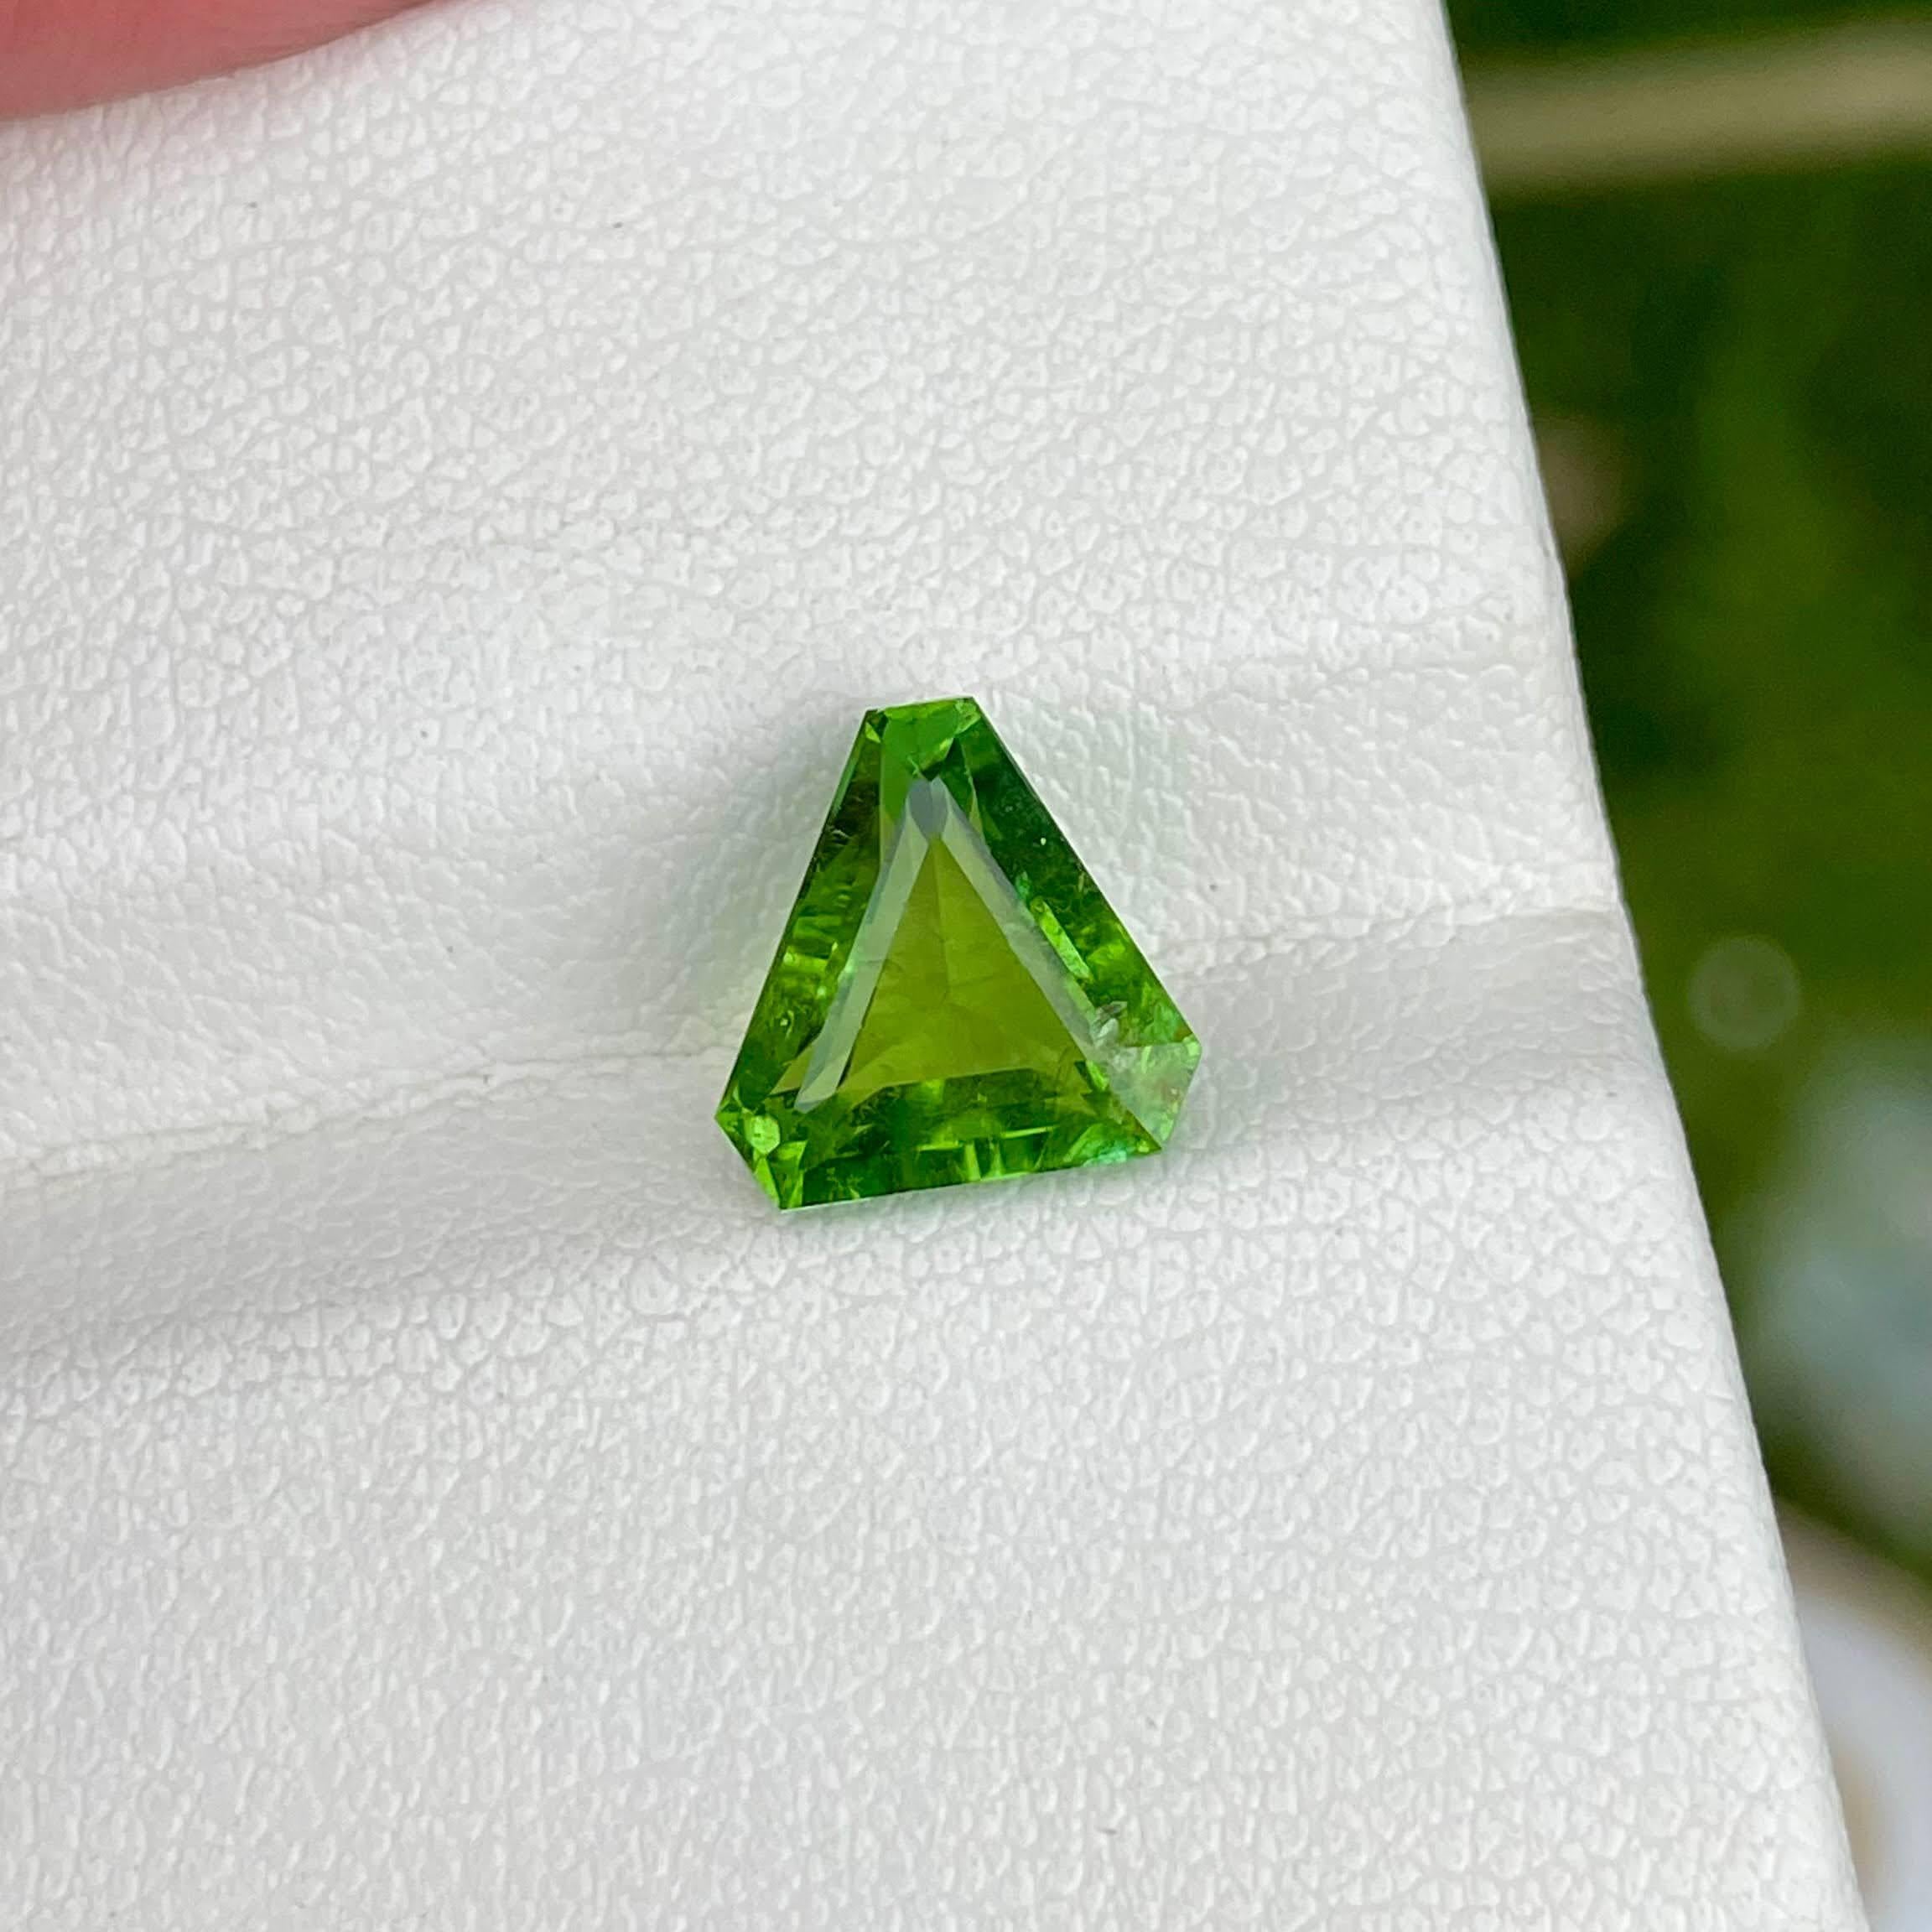 Poids 2.50 carats 
Dimensions 8,9x8,2x5,4 mm
Traitement aucun 
Origine Nigeria 
Clarity SI
Forme Triangulaire 
Coupe Trilliant 



La pierre de tourmaline verte que vous possédez est une gemme captivante d'origine naturelle, provenant des riches